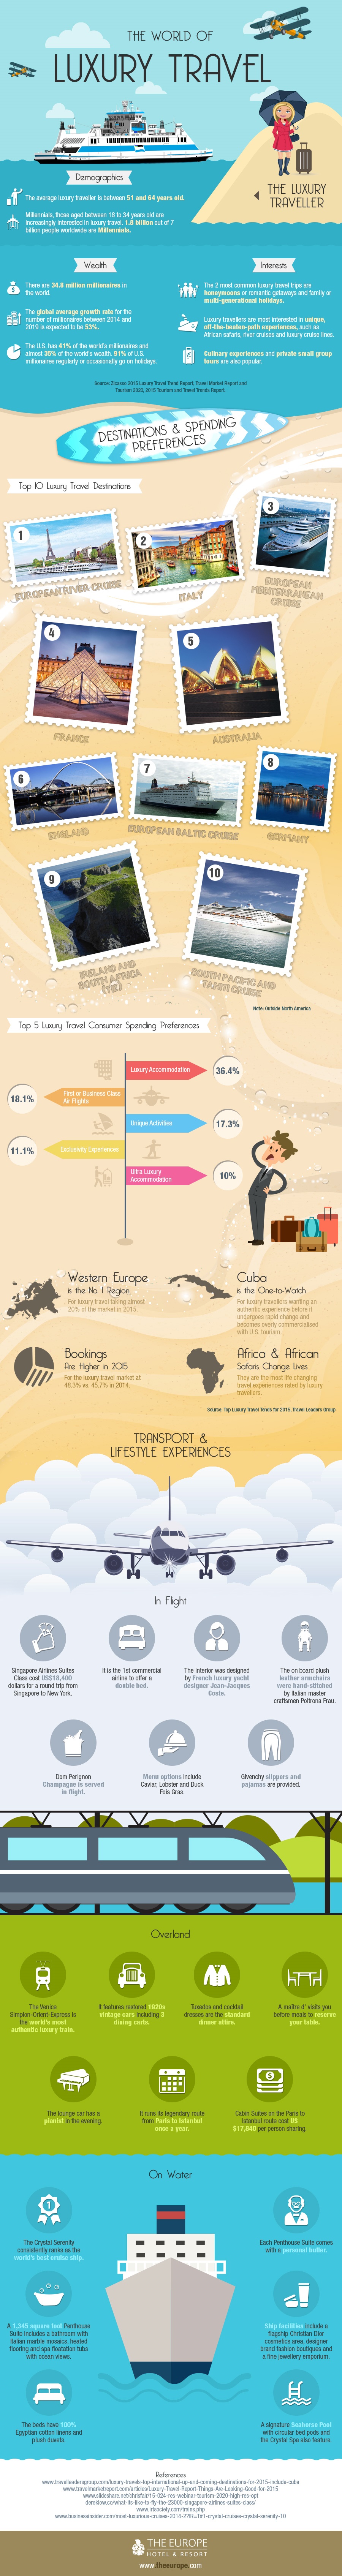 luxury travel infographic